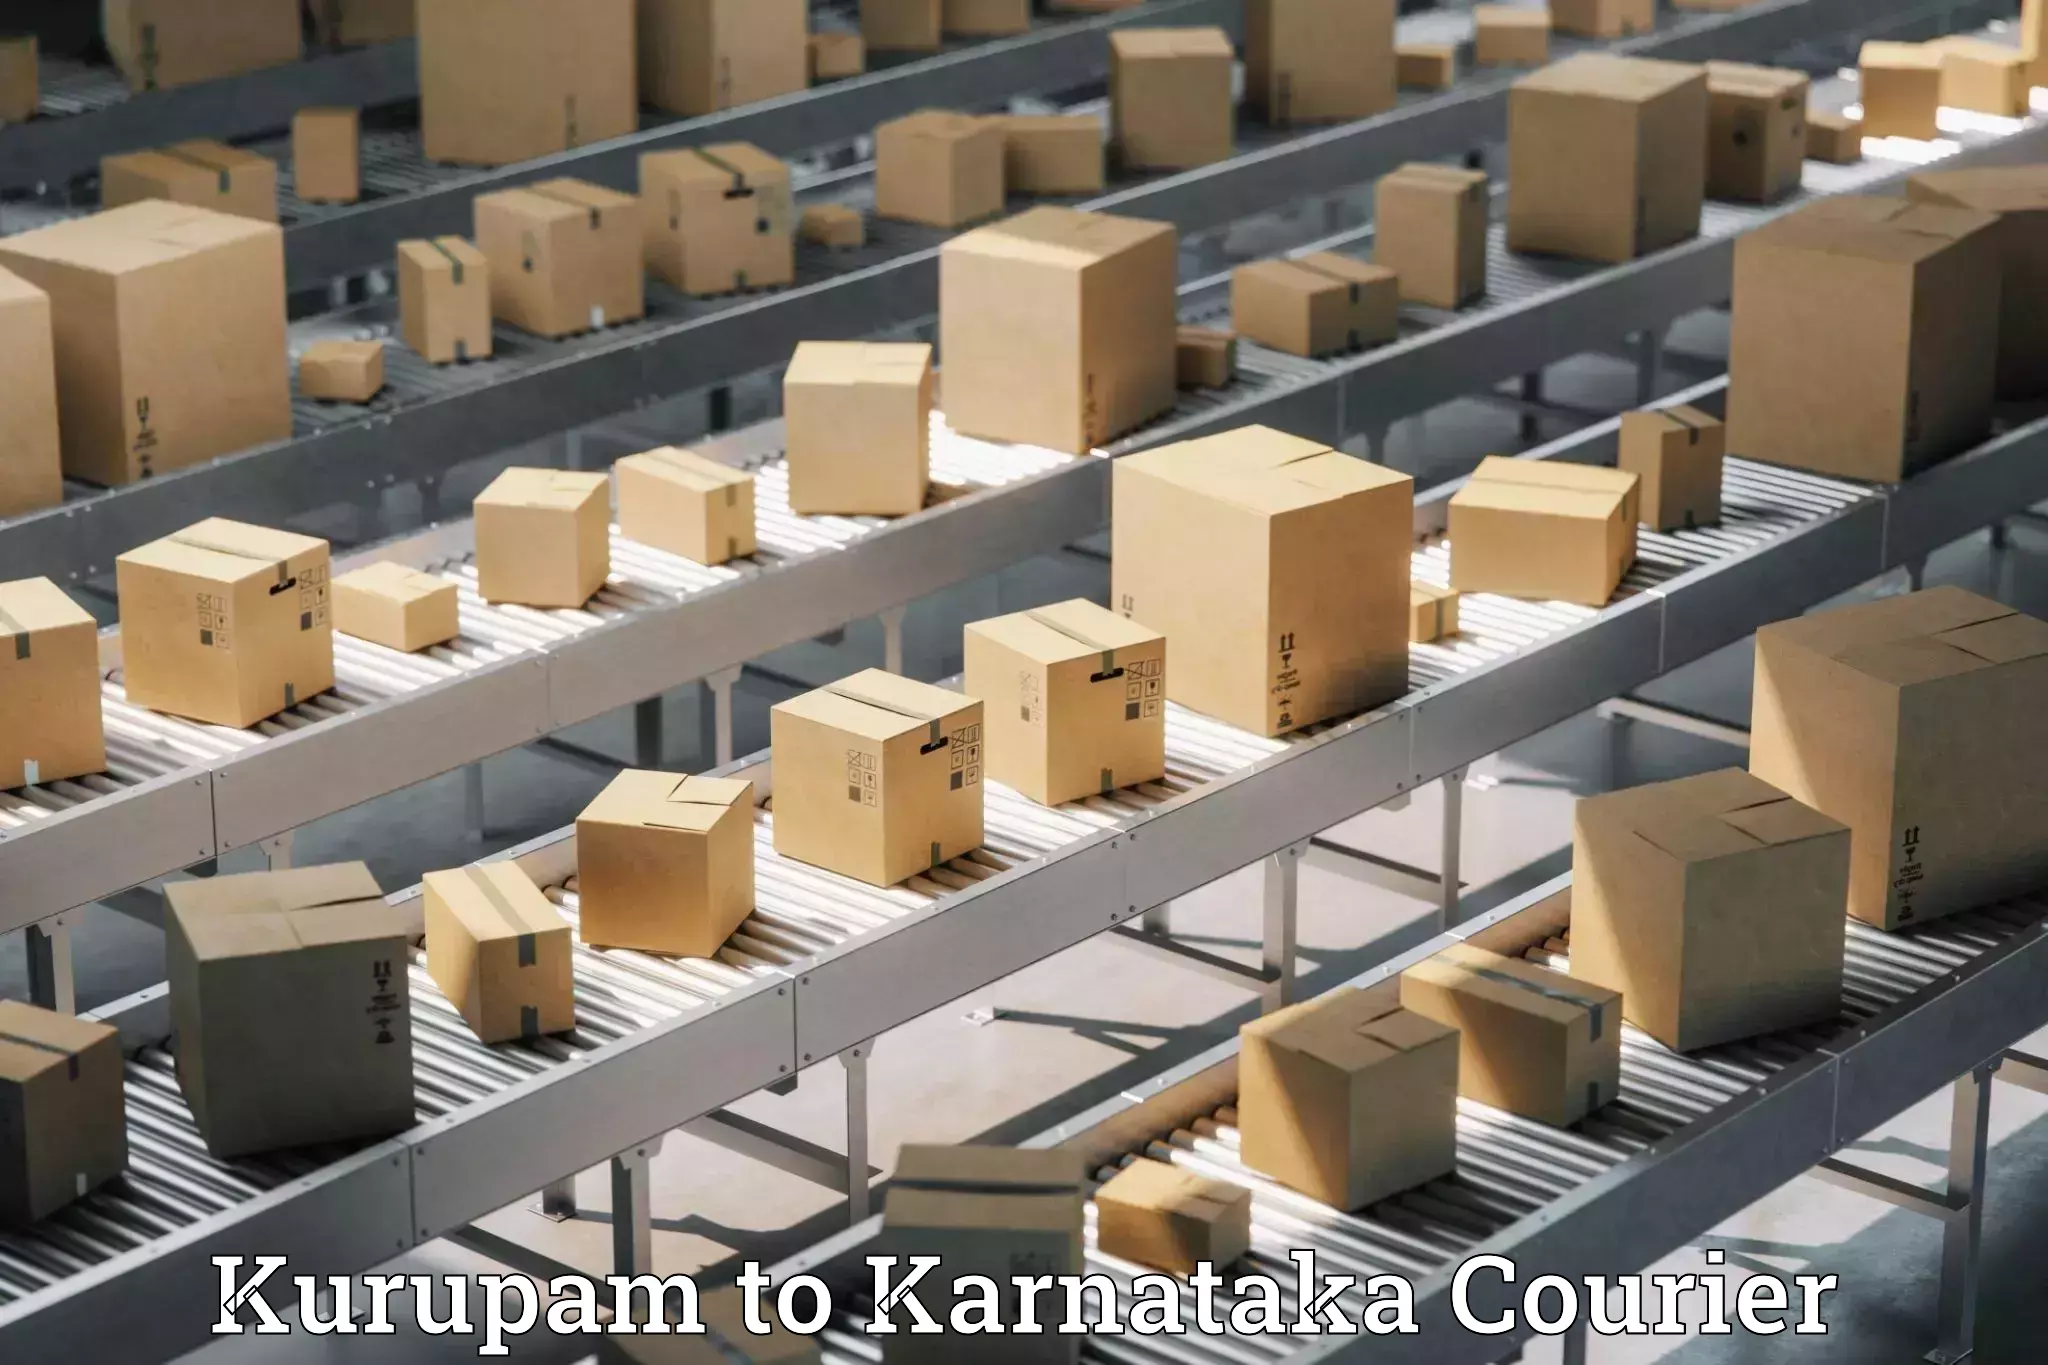 Nationwide shipping capabilities Kurupam to Dharwad